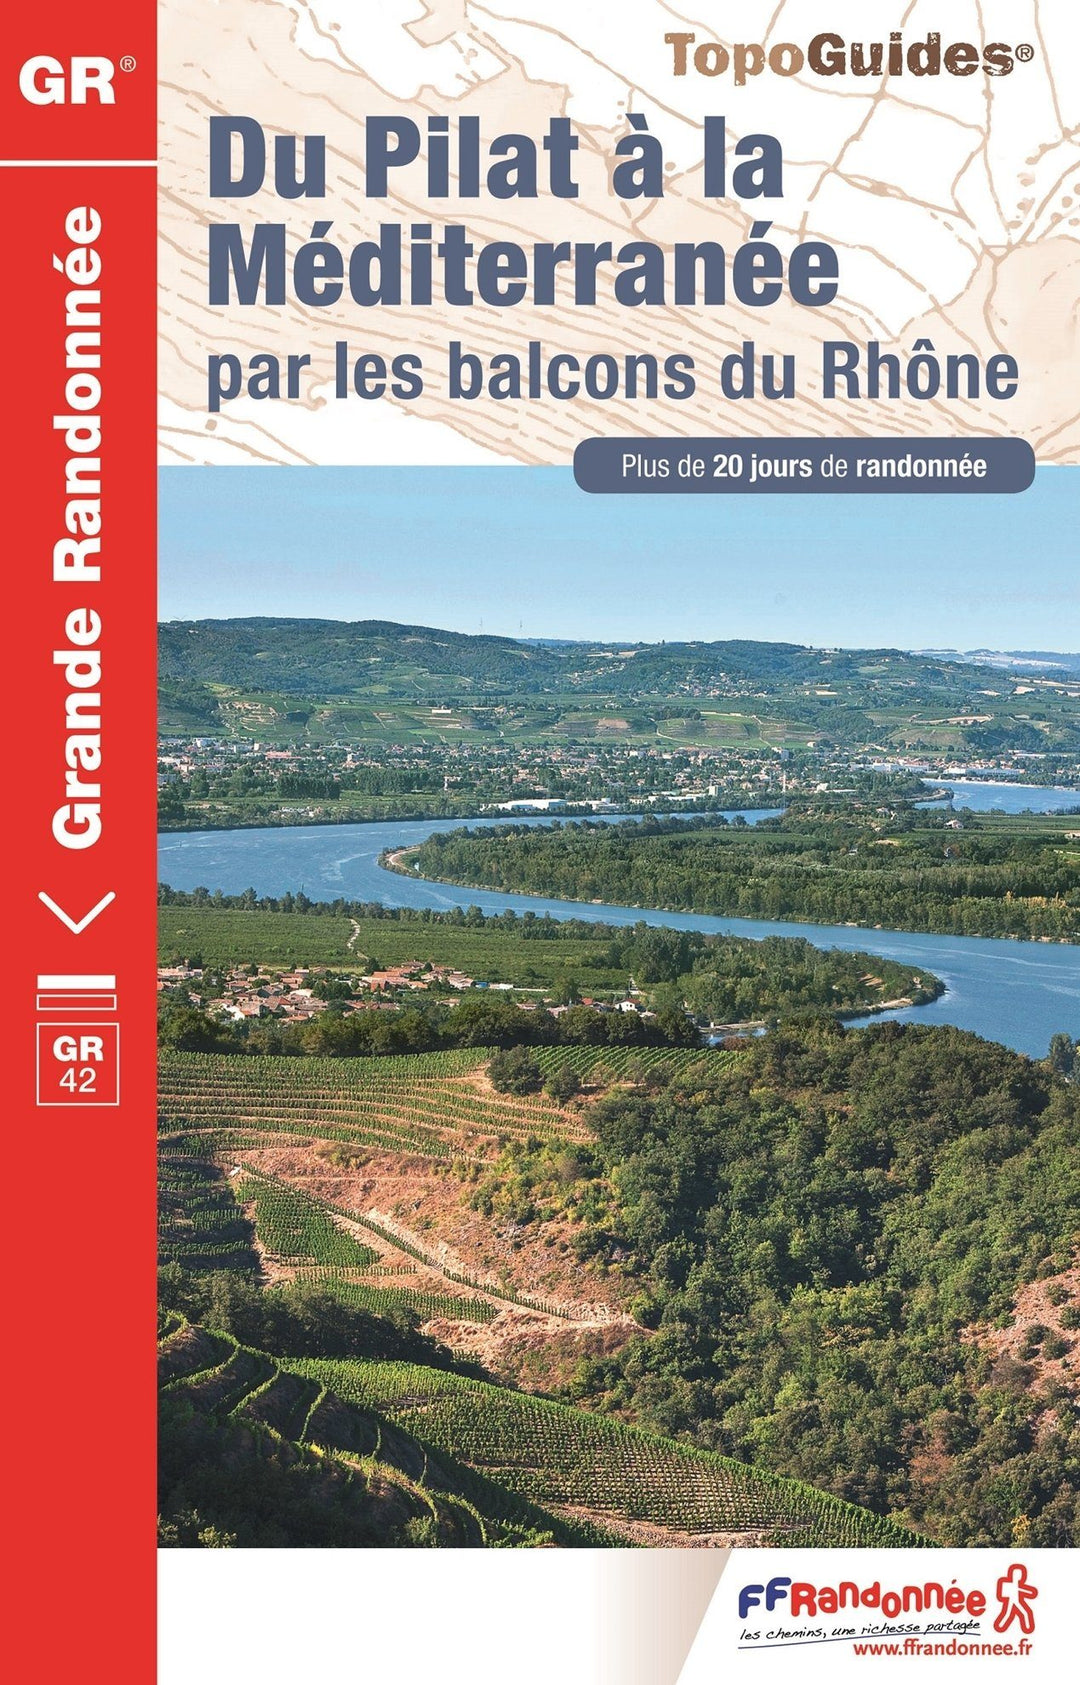 Topoguide de randonnée - Du Pilat à la méditerranée par les balcons du Rhône - GR42 | FFR guide de randonnée FFR - Fédération Française de Randonnée 